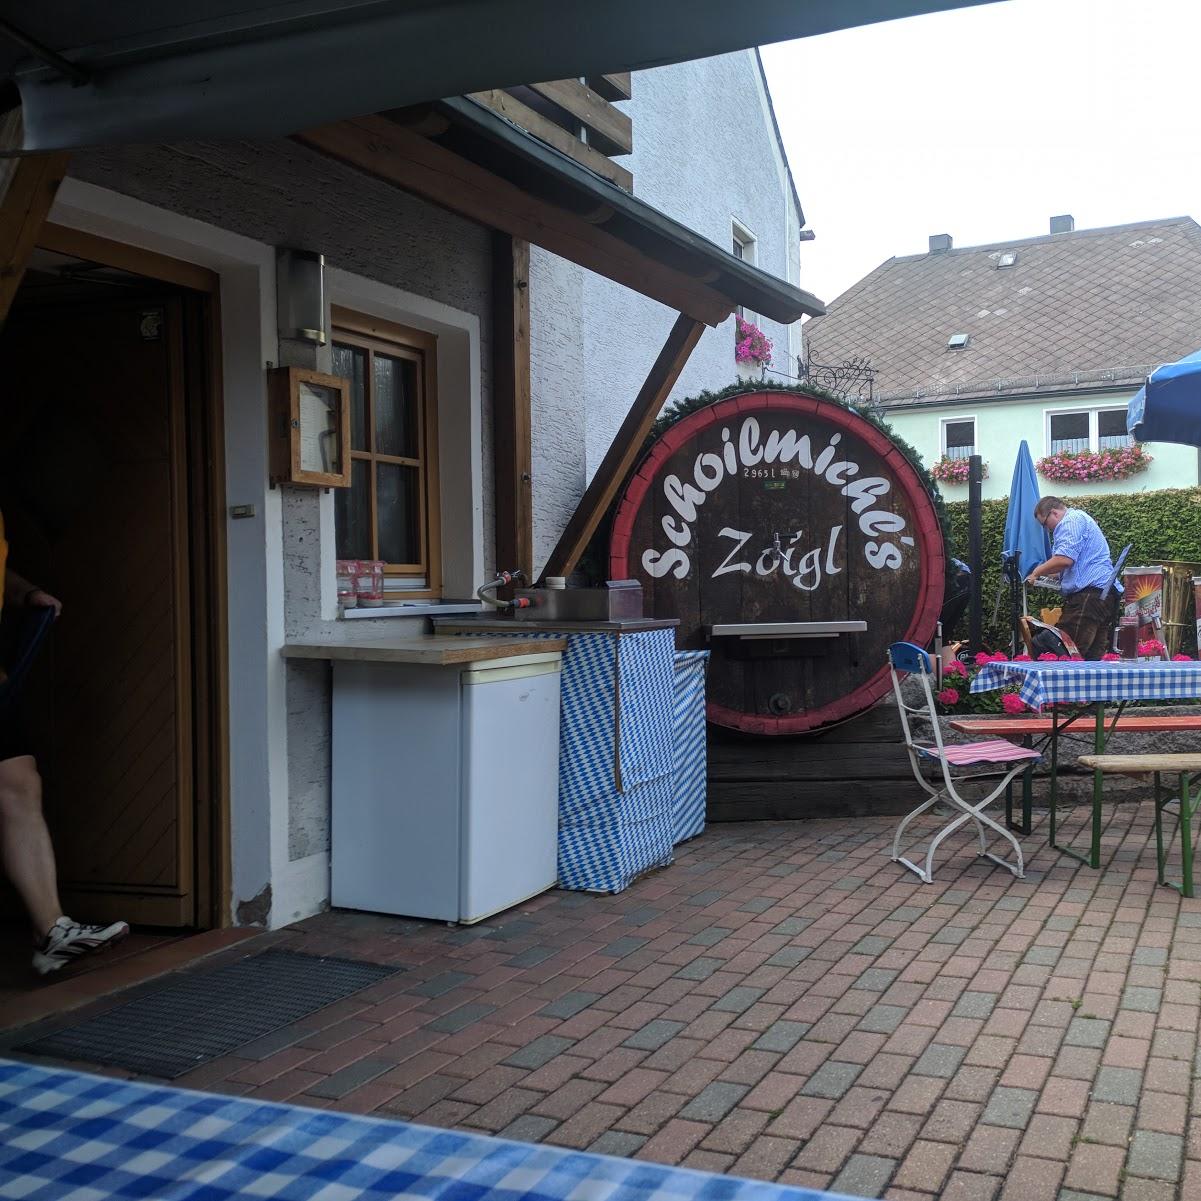 Restaurant "Zoiglbräukeller Schoilmichl" in Windischeschenbach